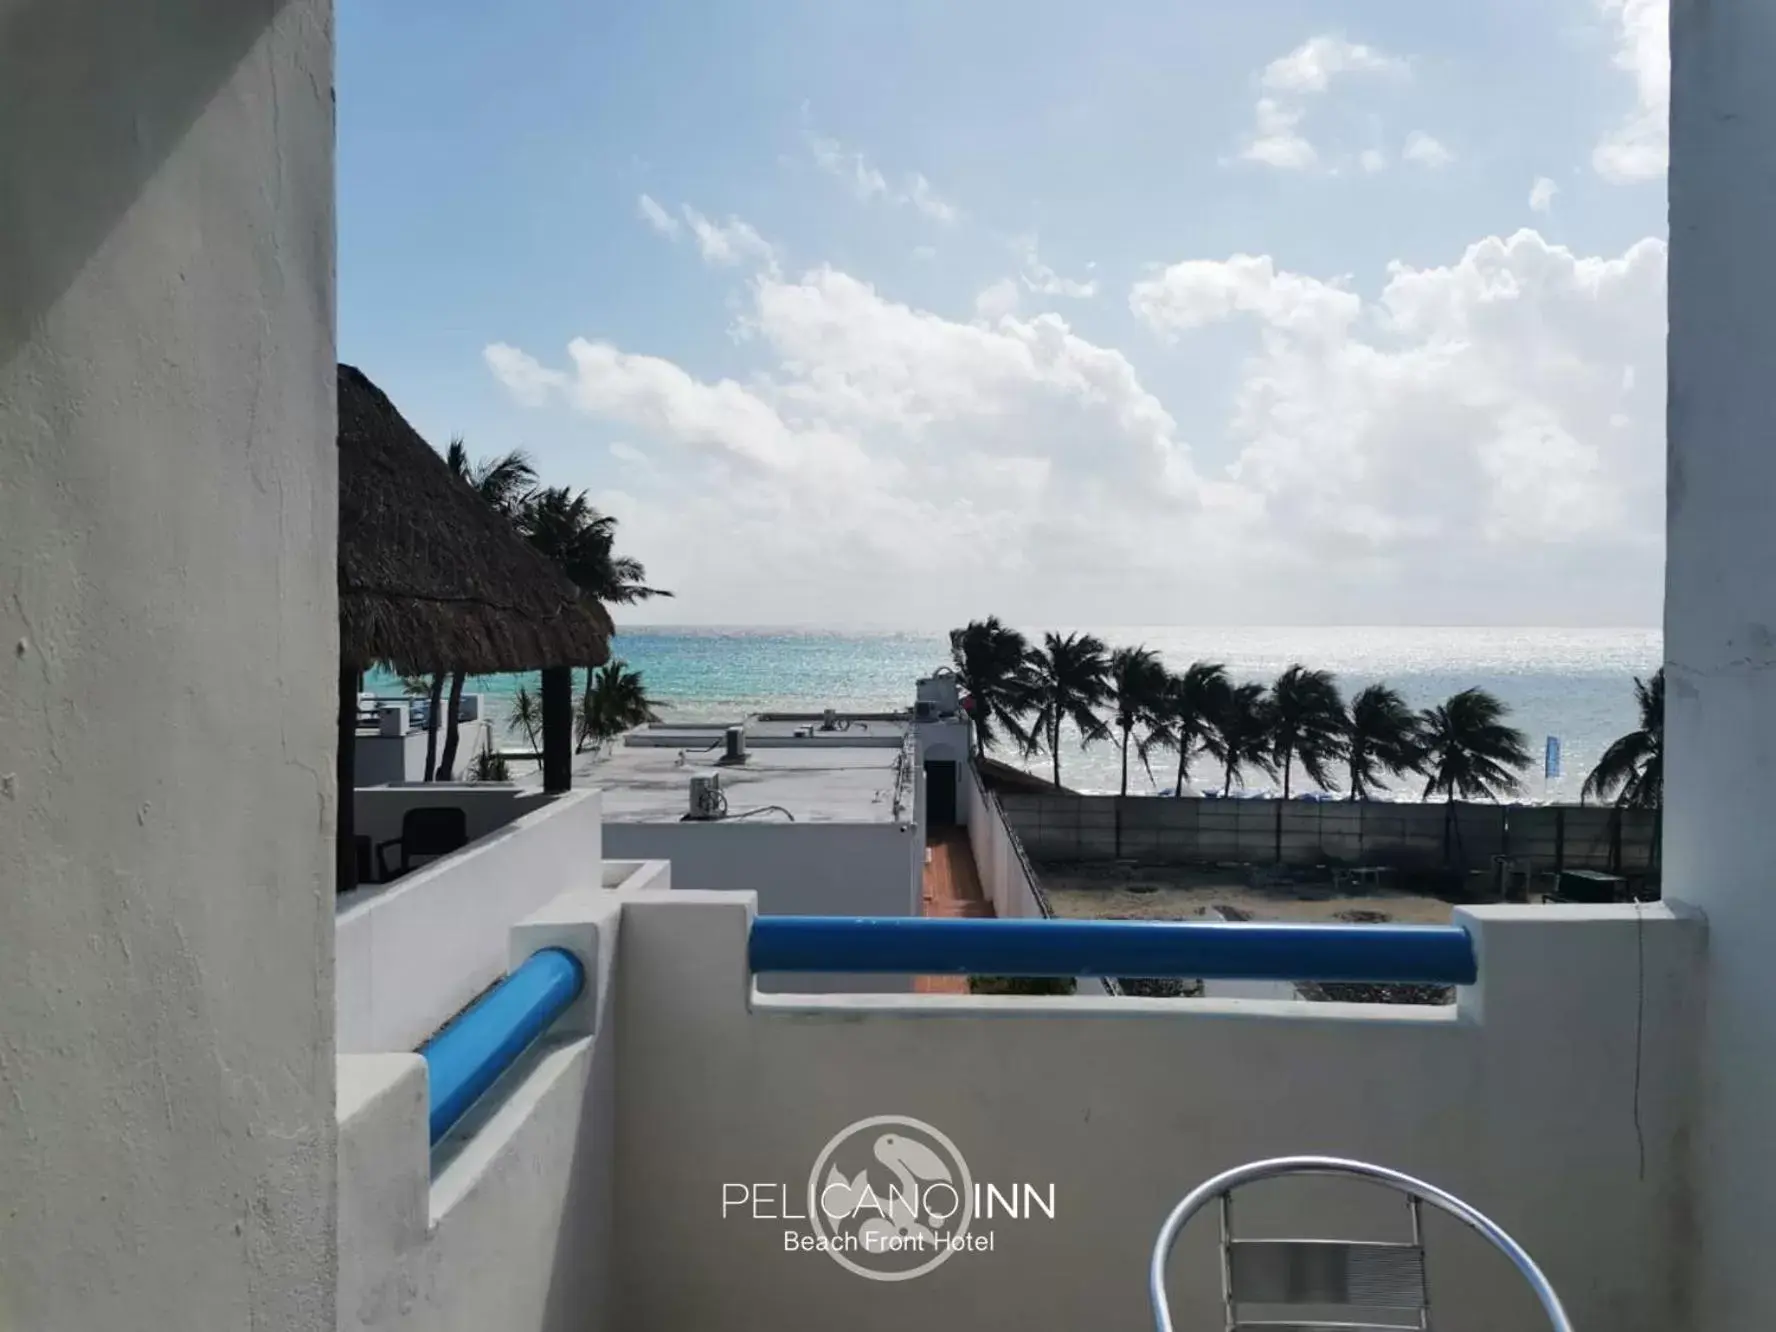 Balcony/Terrace in Pelicano Inn Playa del Carmen - Beachfront Hotel